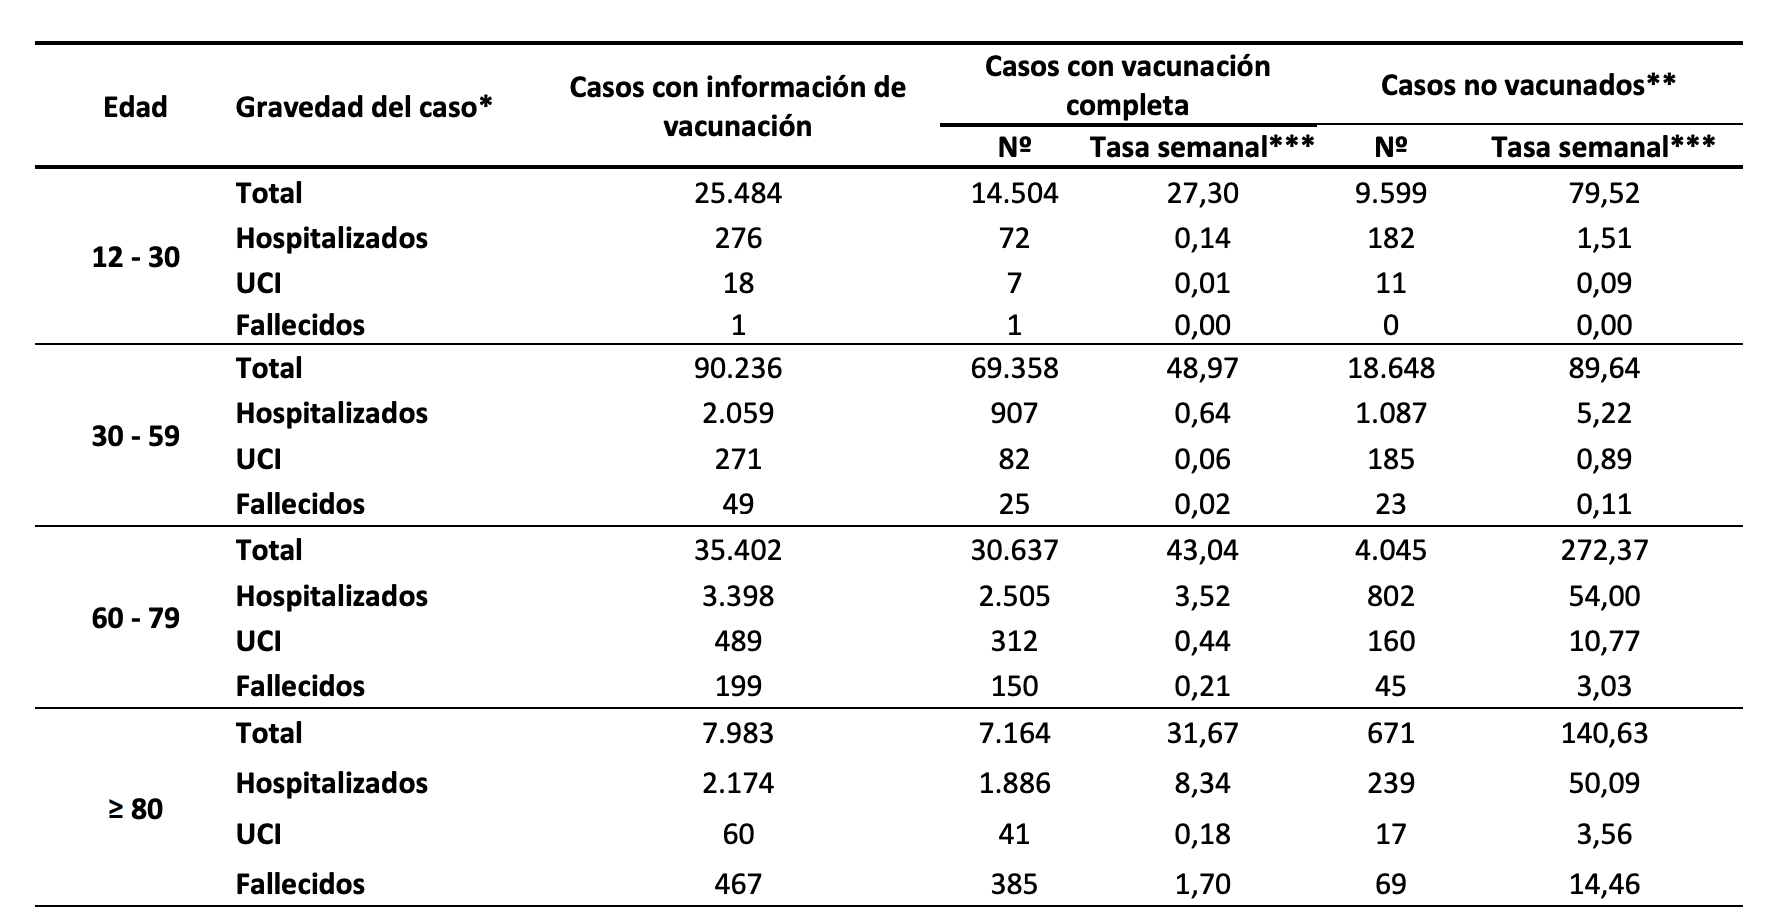 Extracto del informe del Ministerio de Sanidad sobre la gravedad de la enfermedad en vacunados y no vacunados